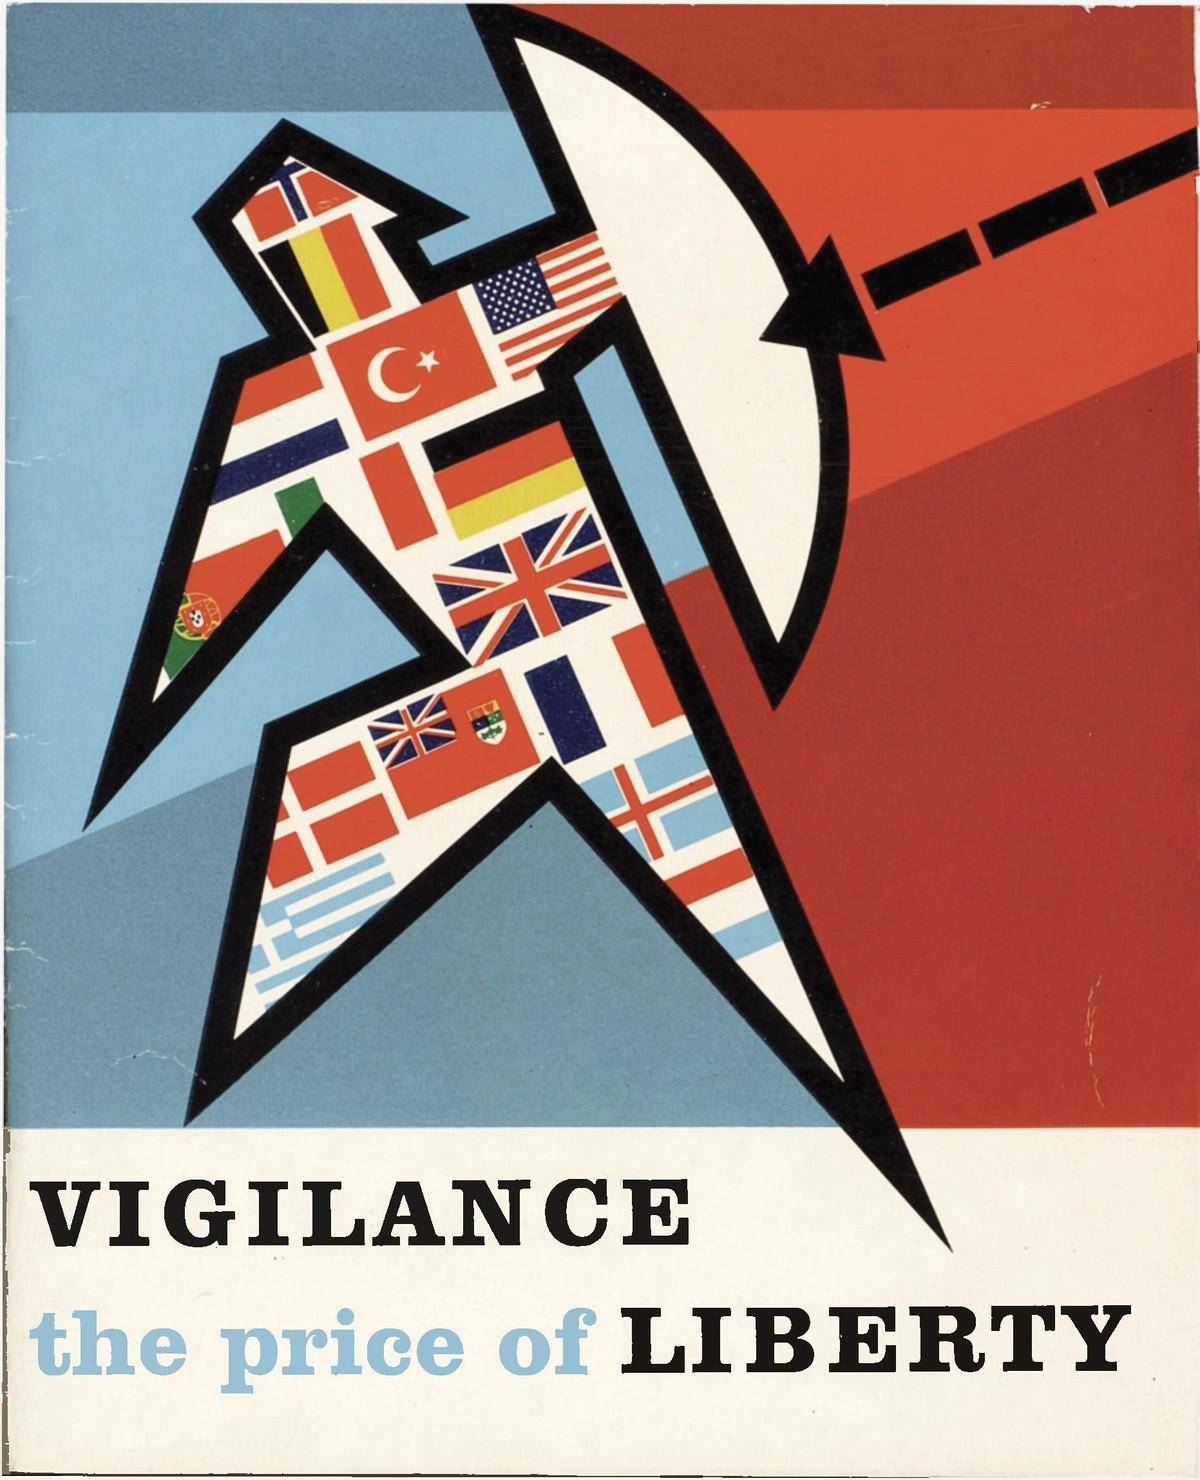 Affiche de l'OTAN « Le prix de la liberté est la vigilance », 1963.